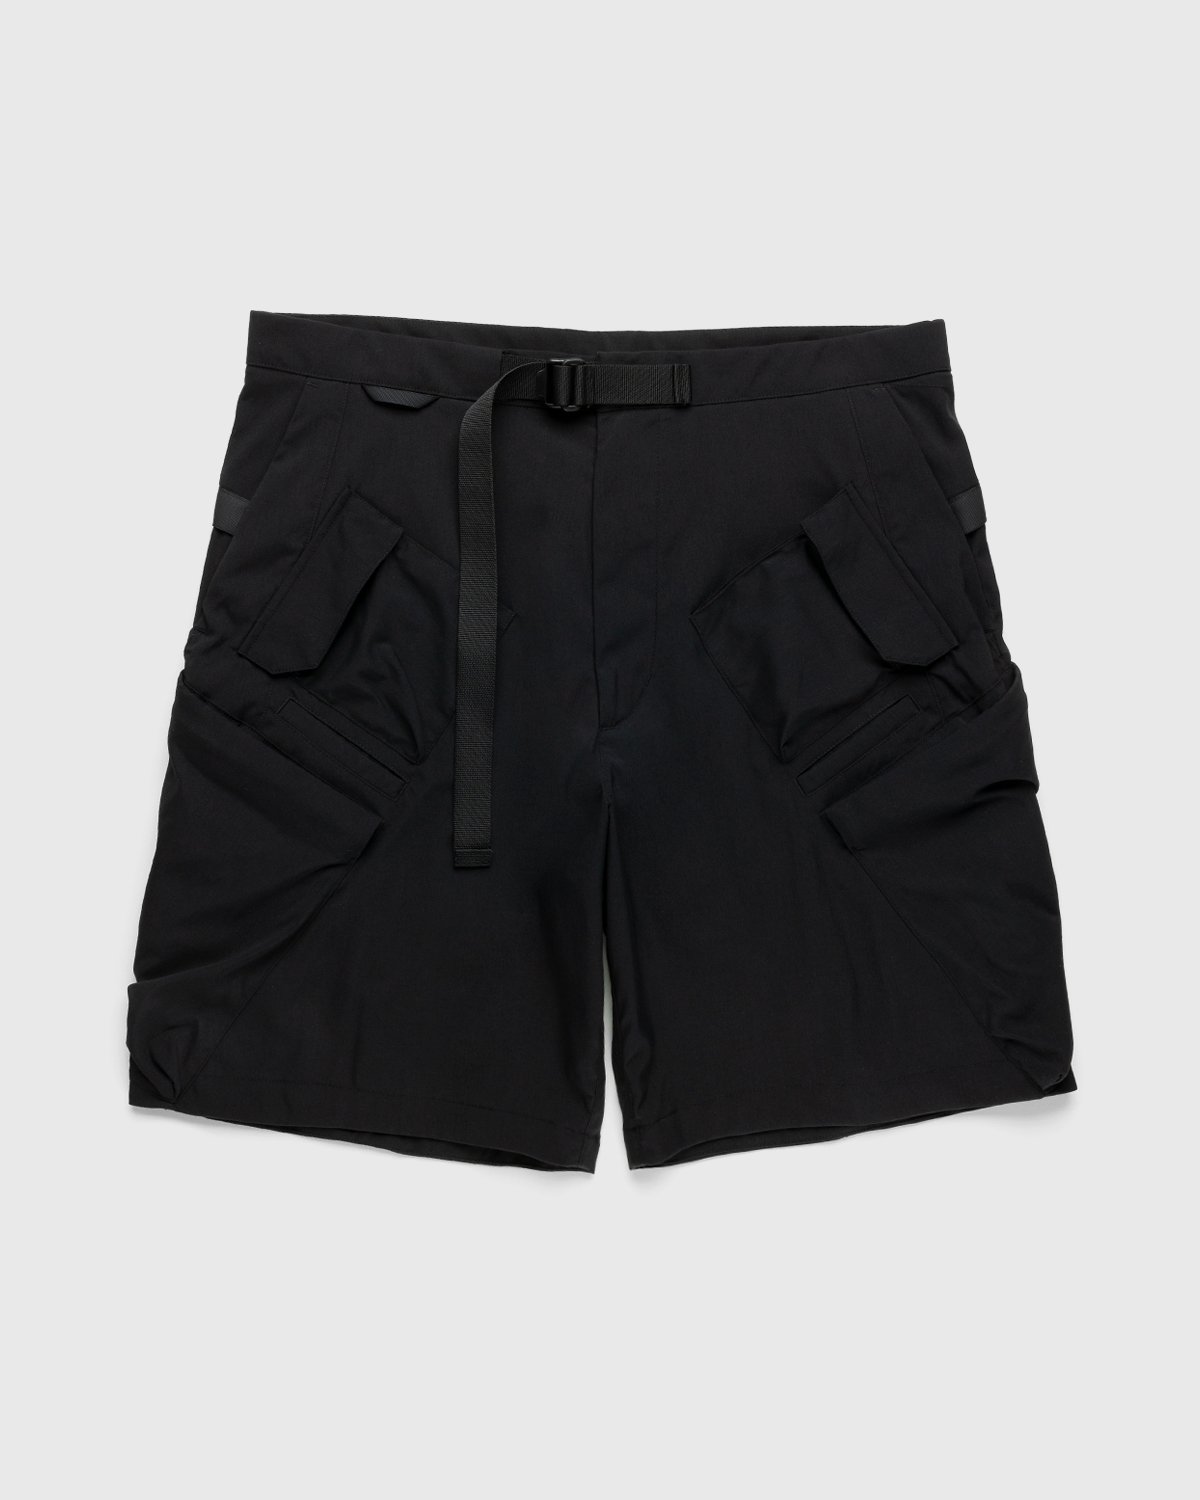 ACRONYM - SP29-M Cargo Shorts Black - Clothing - Black - Image 1